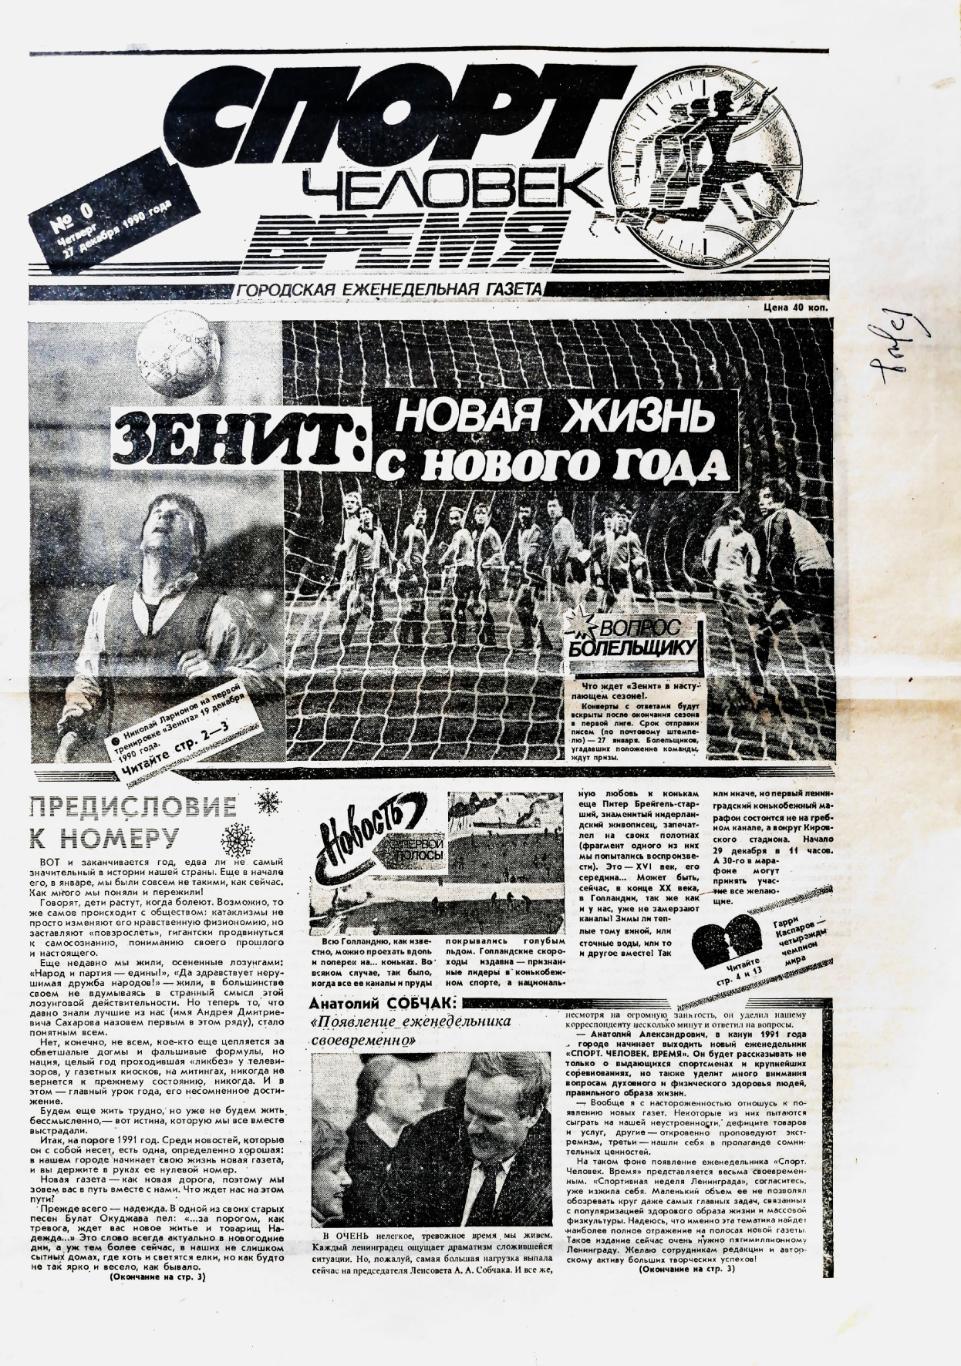 Спорт. Человек. Время (Ленинград). №00 (27.12.1990)